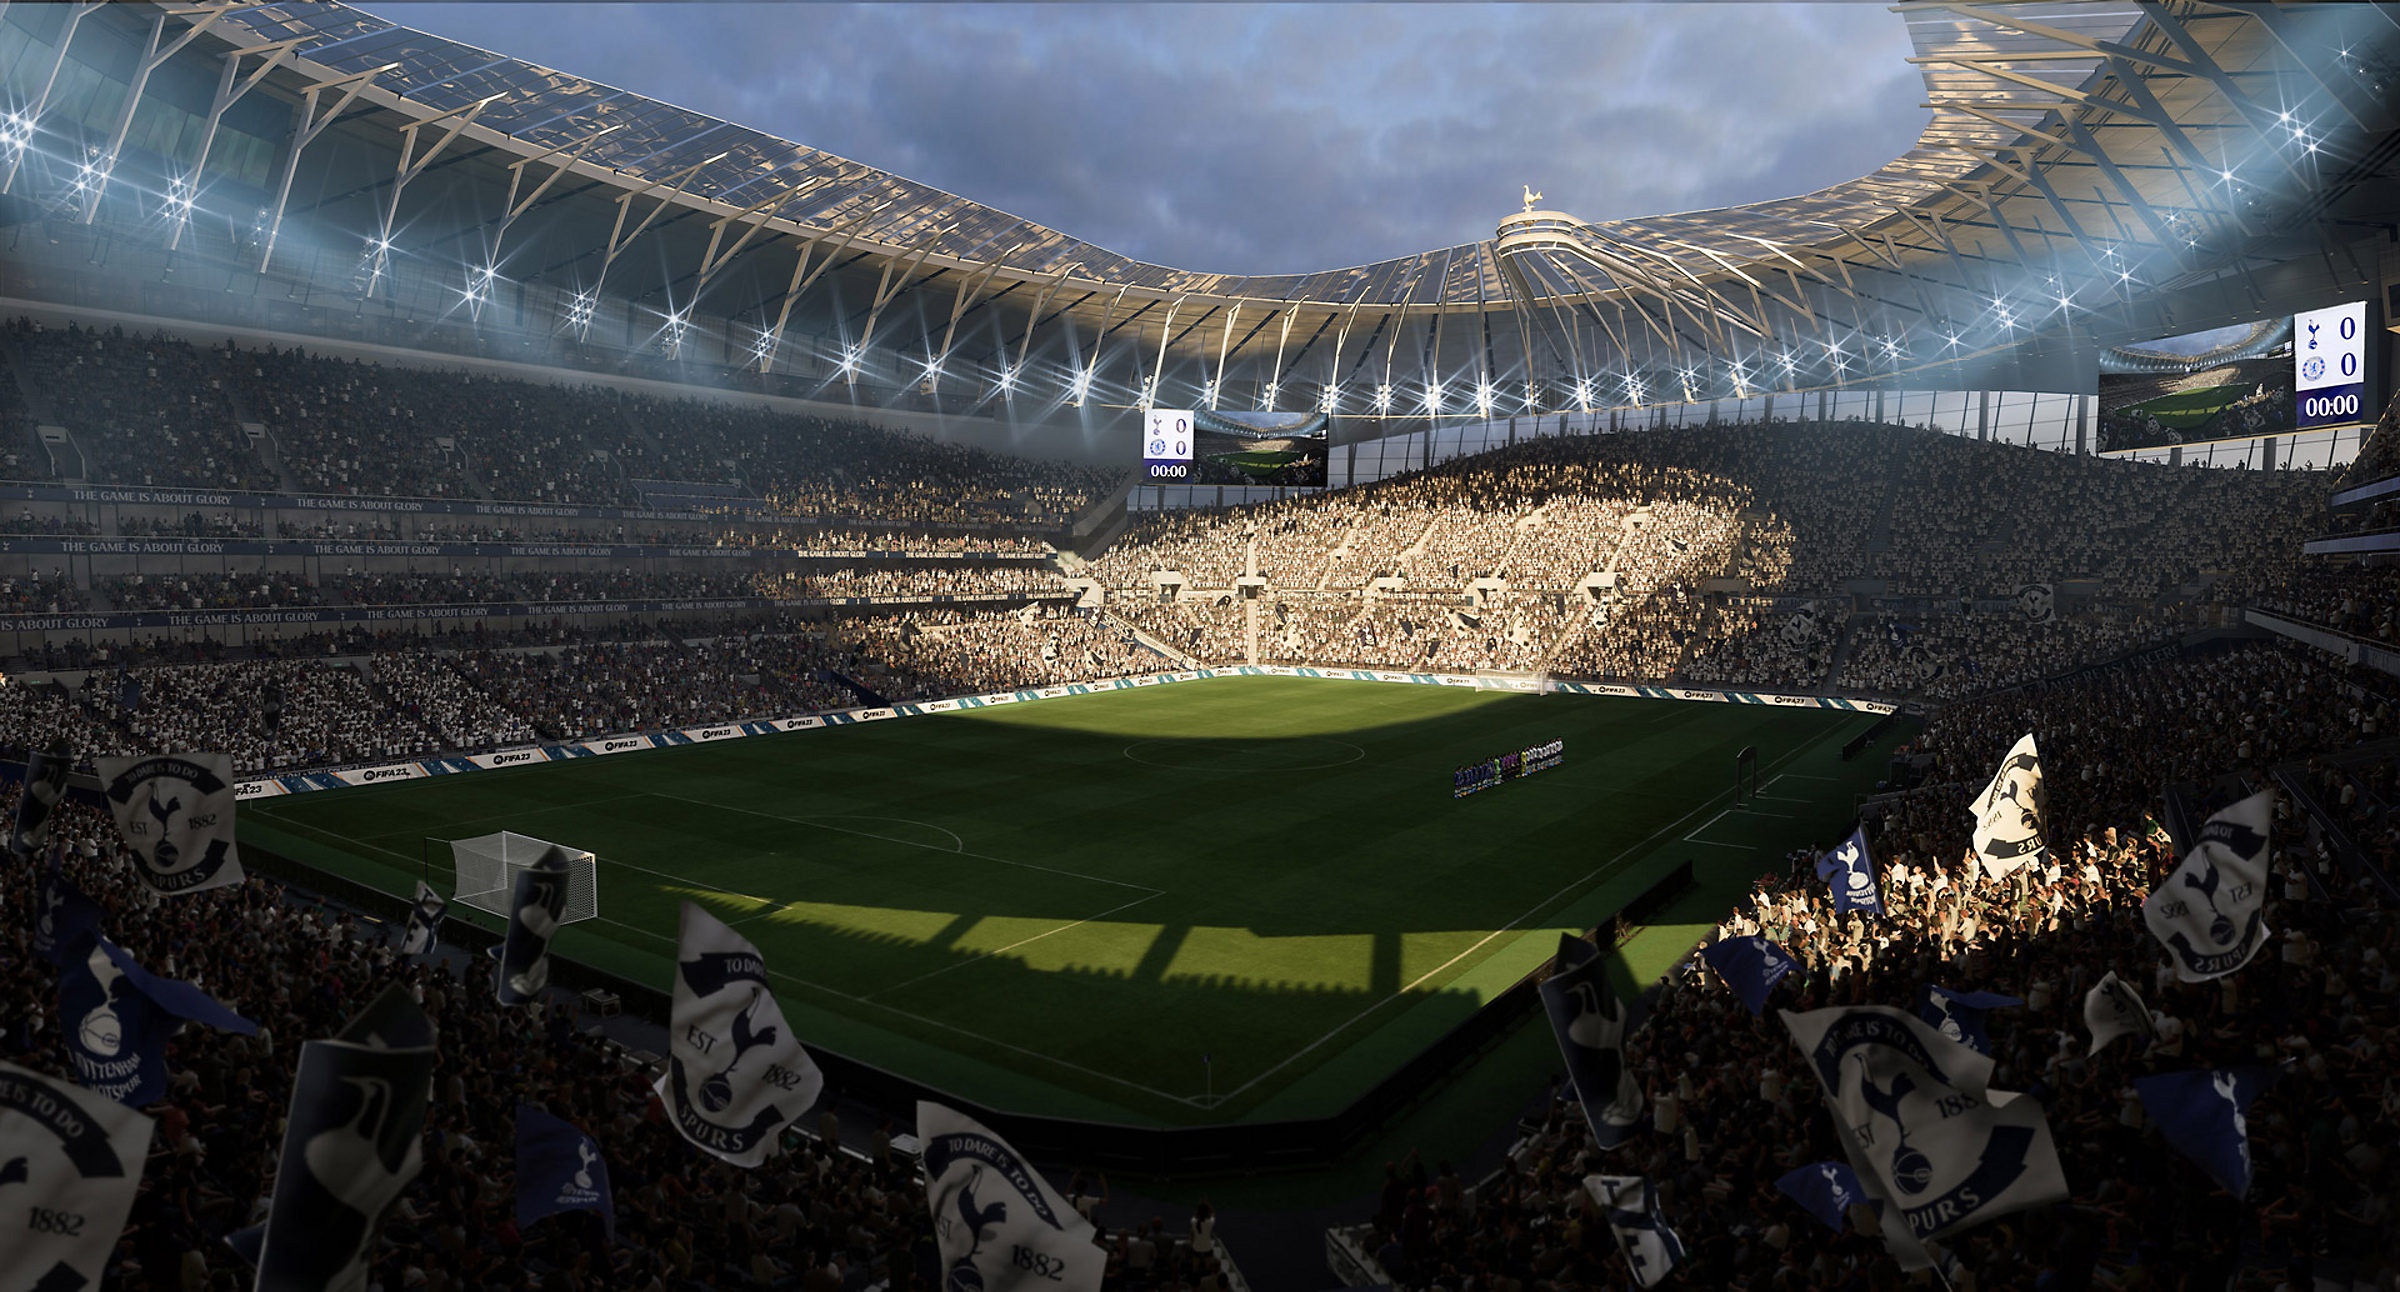 картинка игры FIFA 23 Ultimate edition 